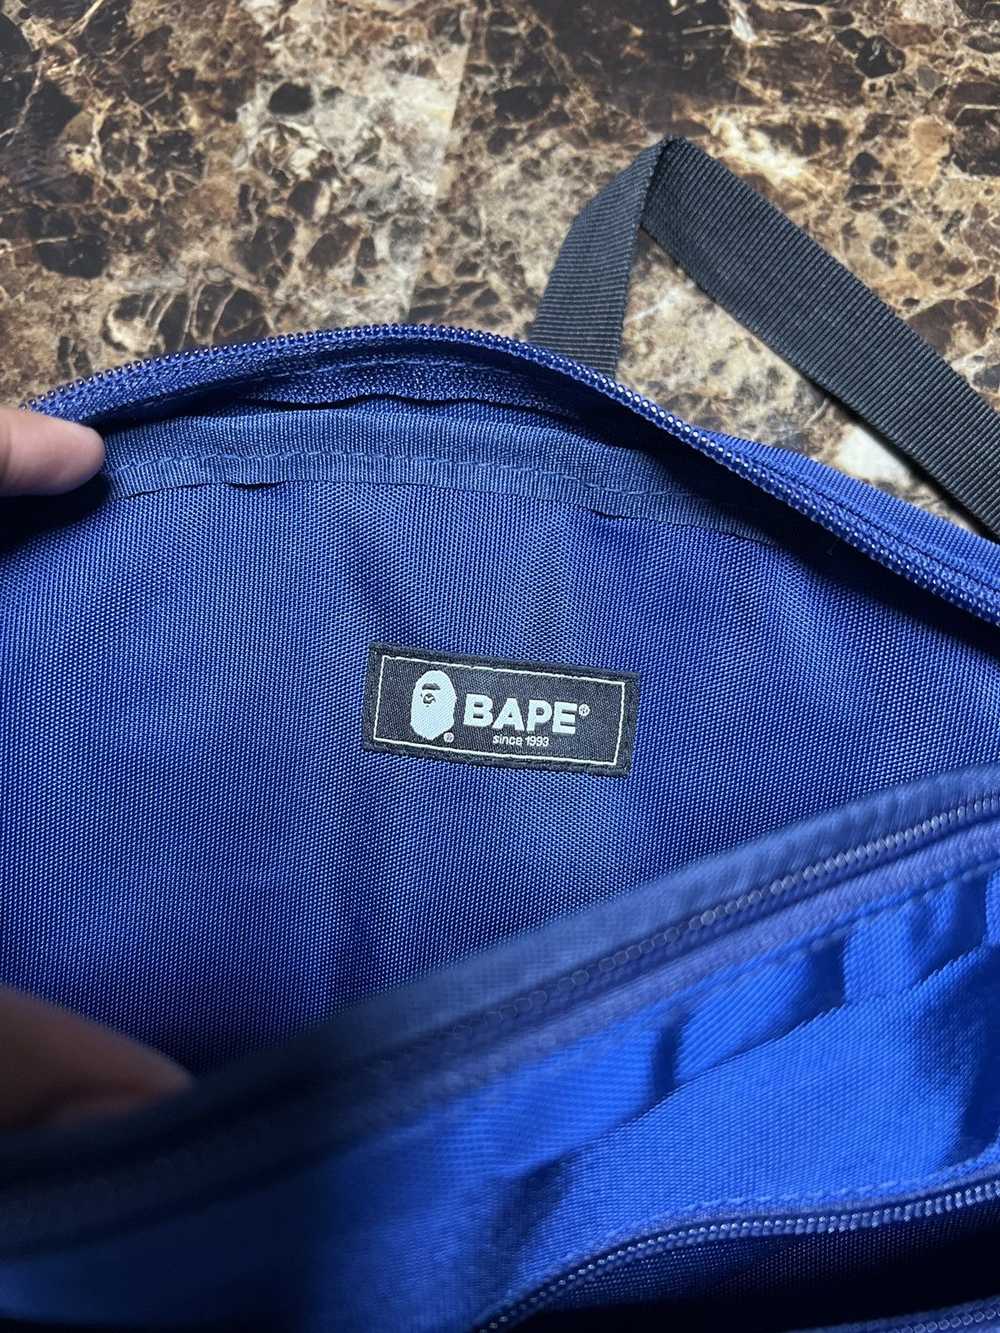 Bape Bape Go Summer Bag - image 3